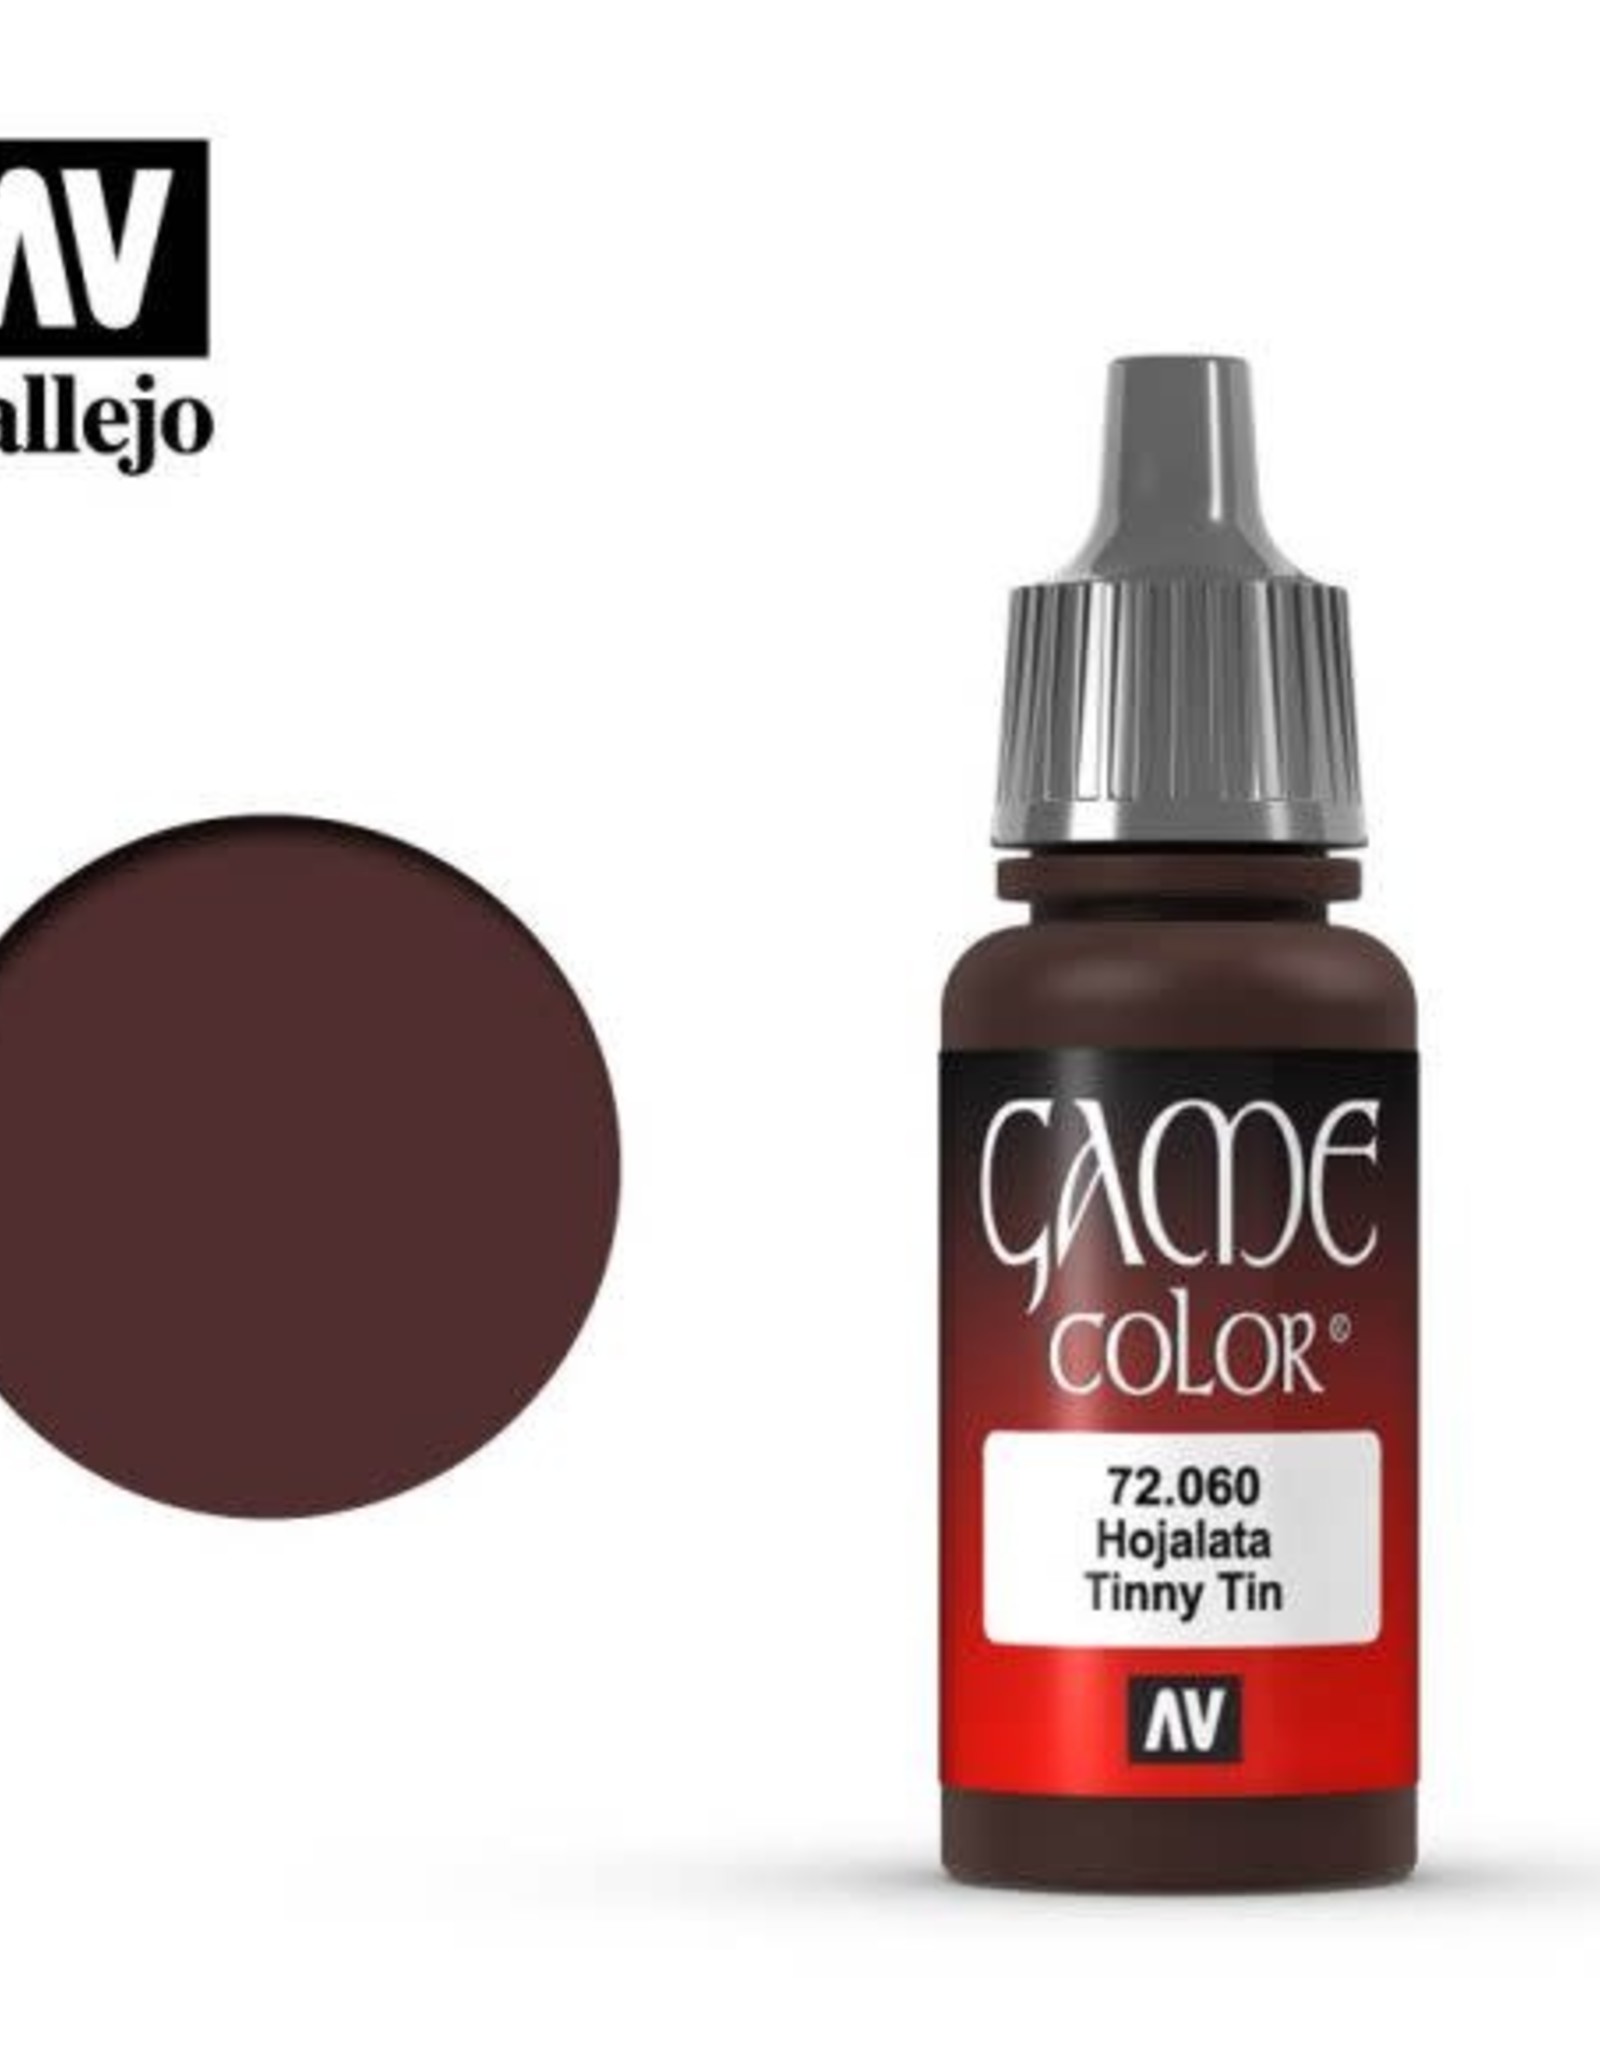 Acrylicos Vallejo AV GC: Tinny Tin 72.060 (17 ml)